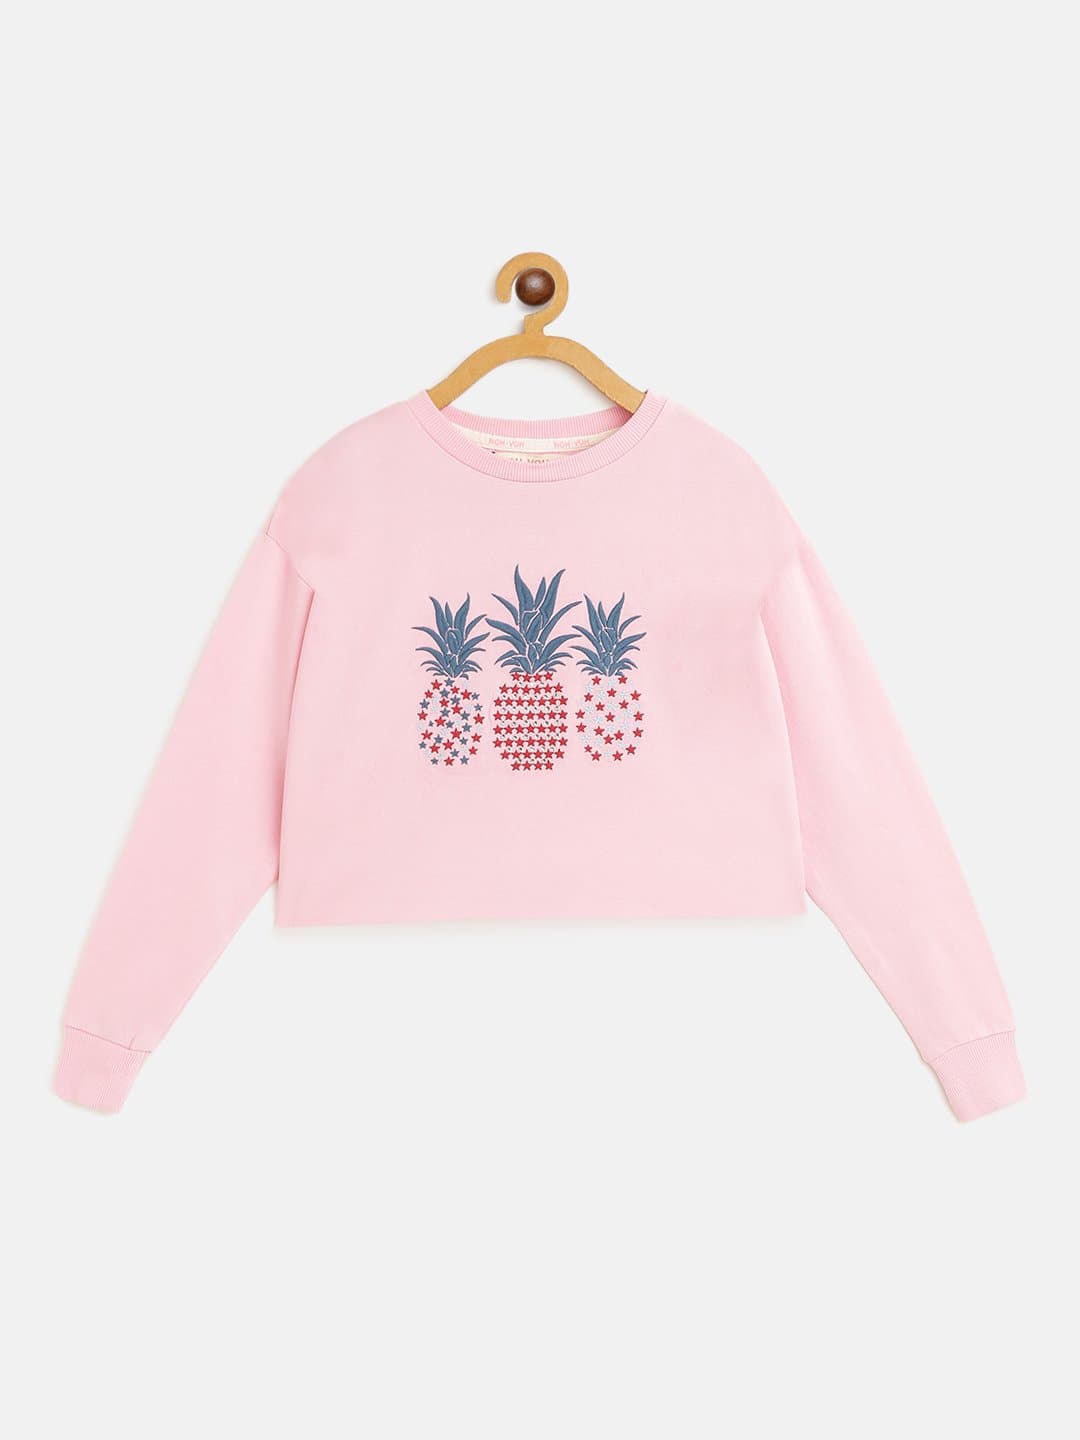 Girls Pink PINEAPPLE Embroidered Crop Sweatshirt-Girls Sweatshirts-SASSAFRAS